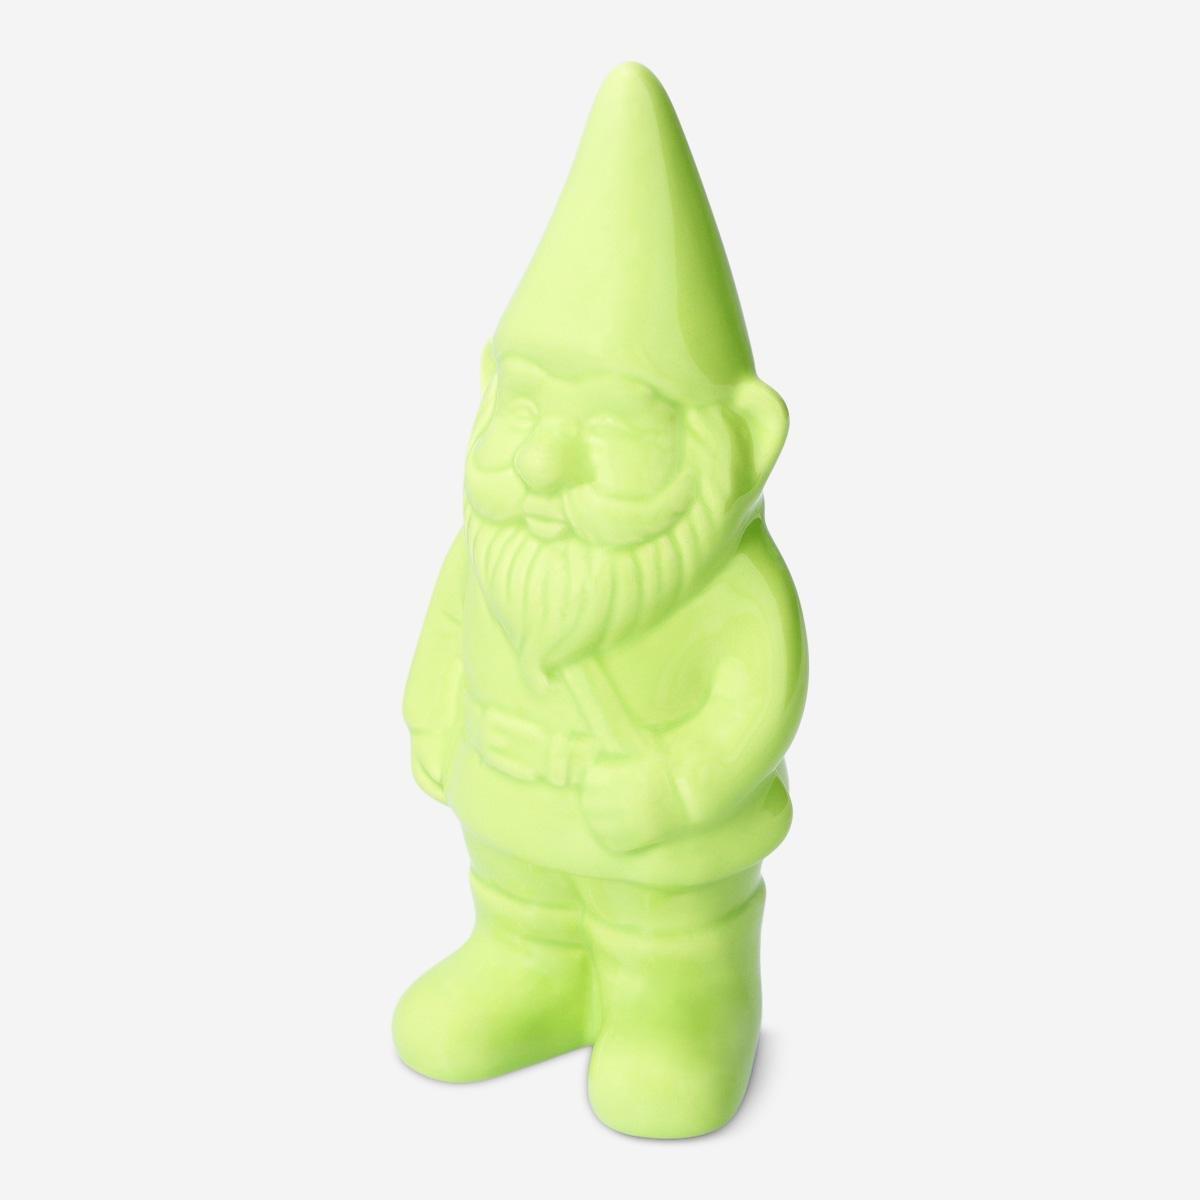 Green garden gnome